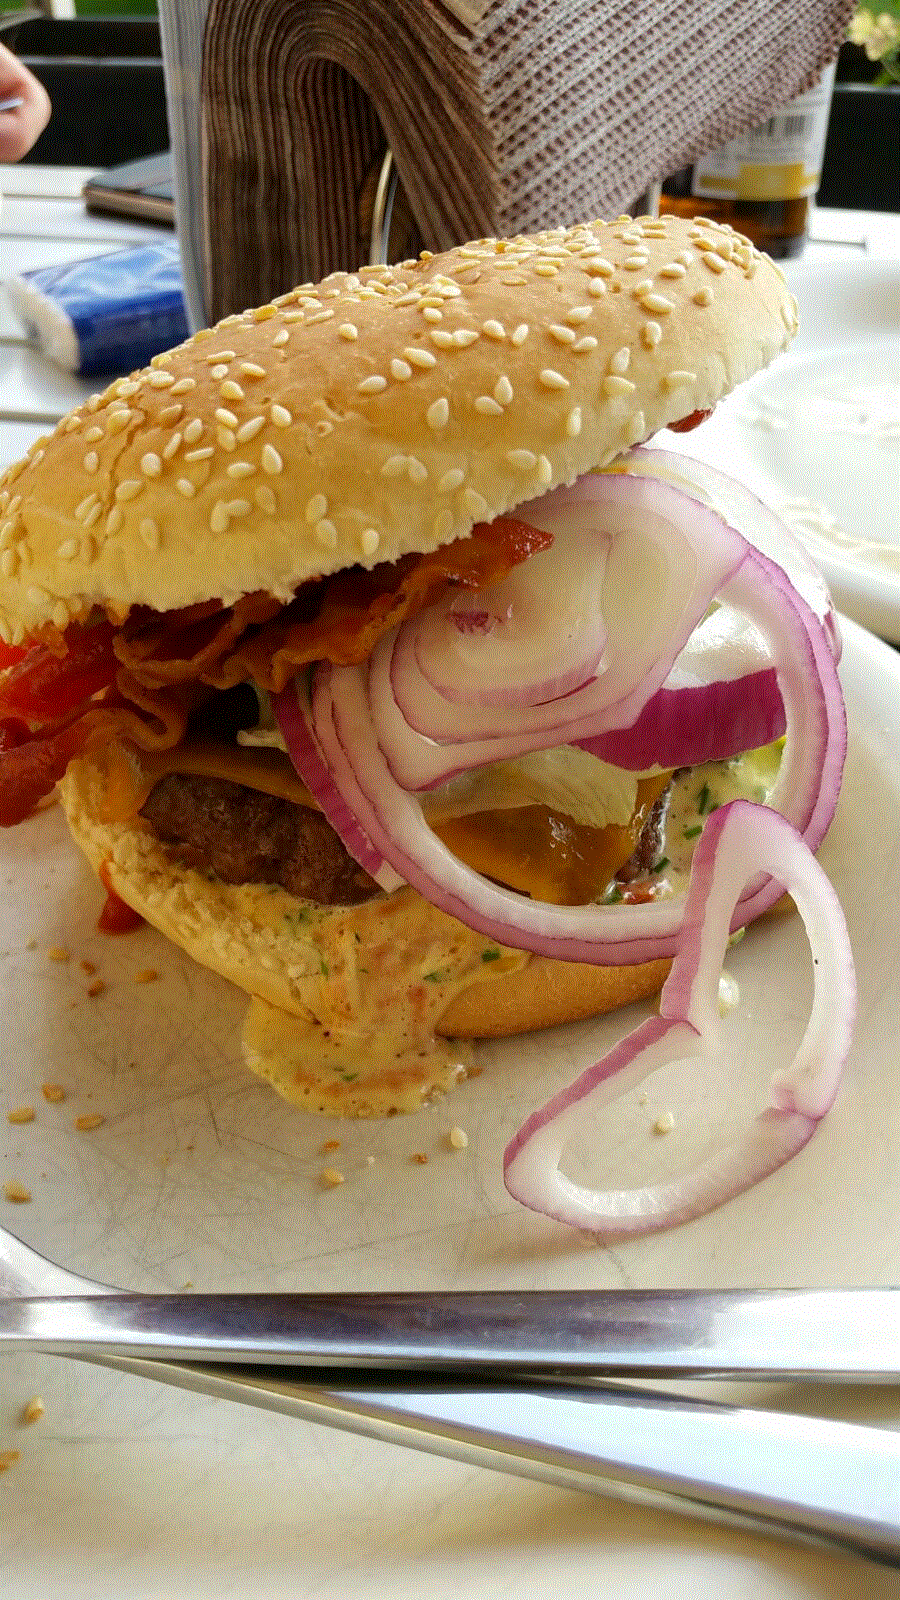 IHL-Burger Surpreme Gildenleiter Special